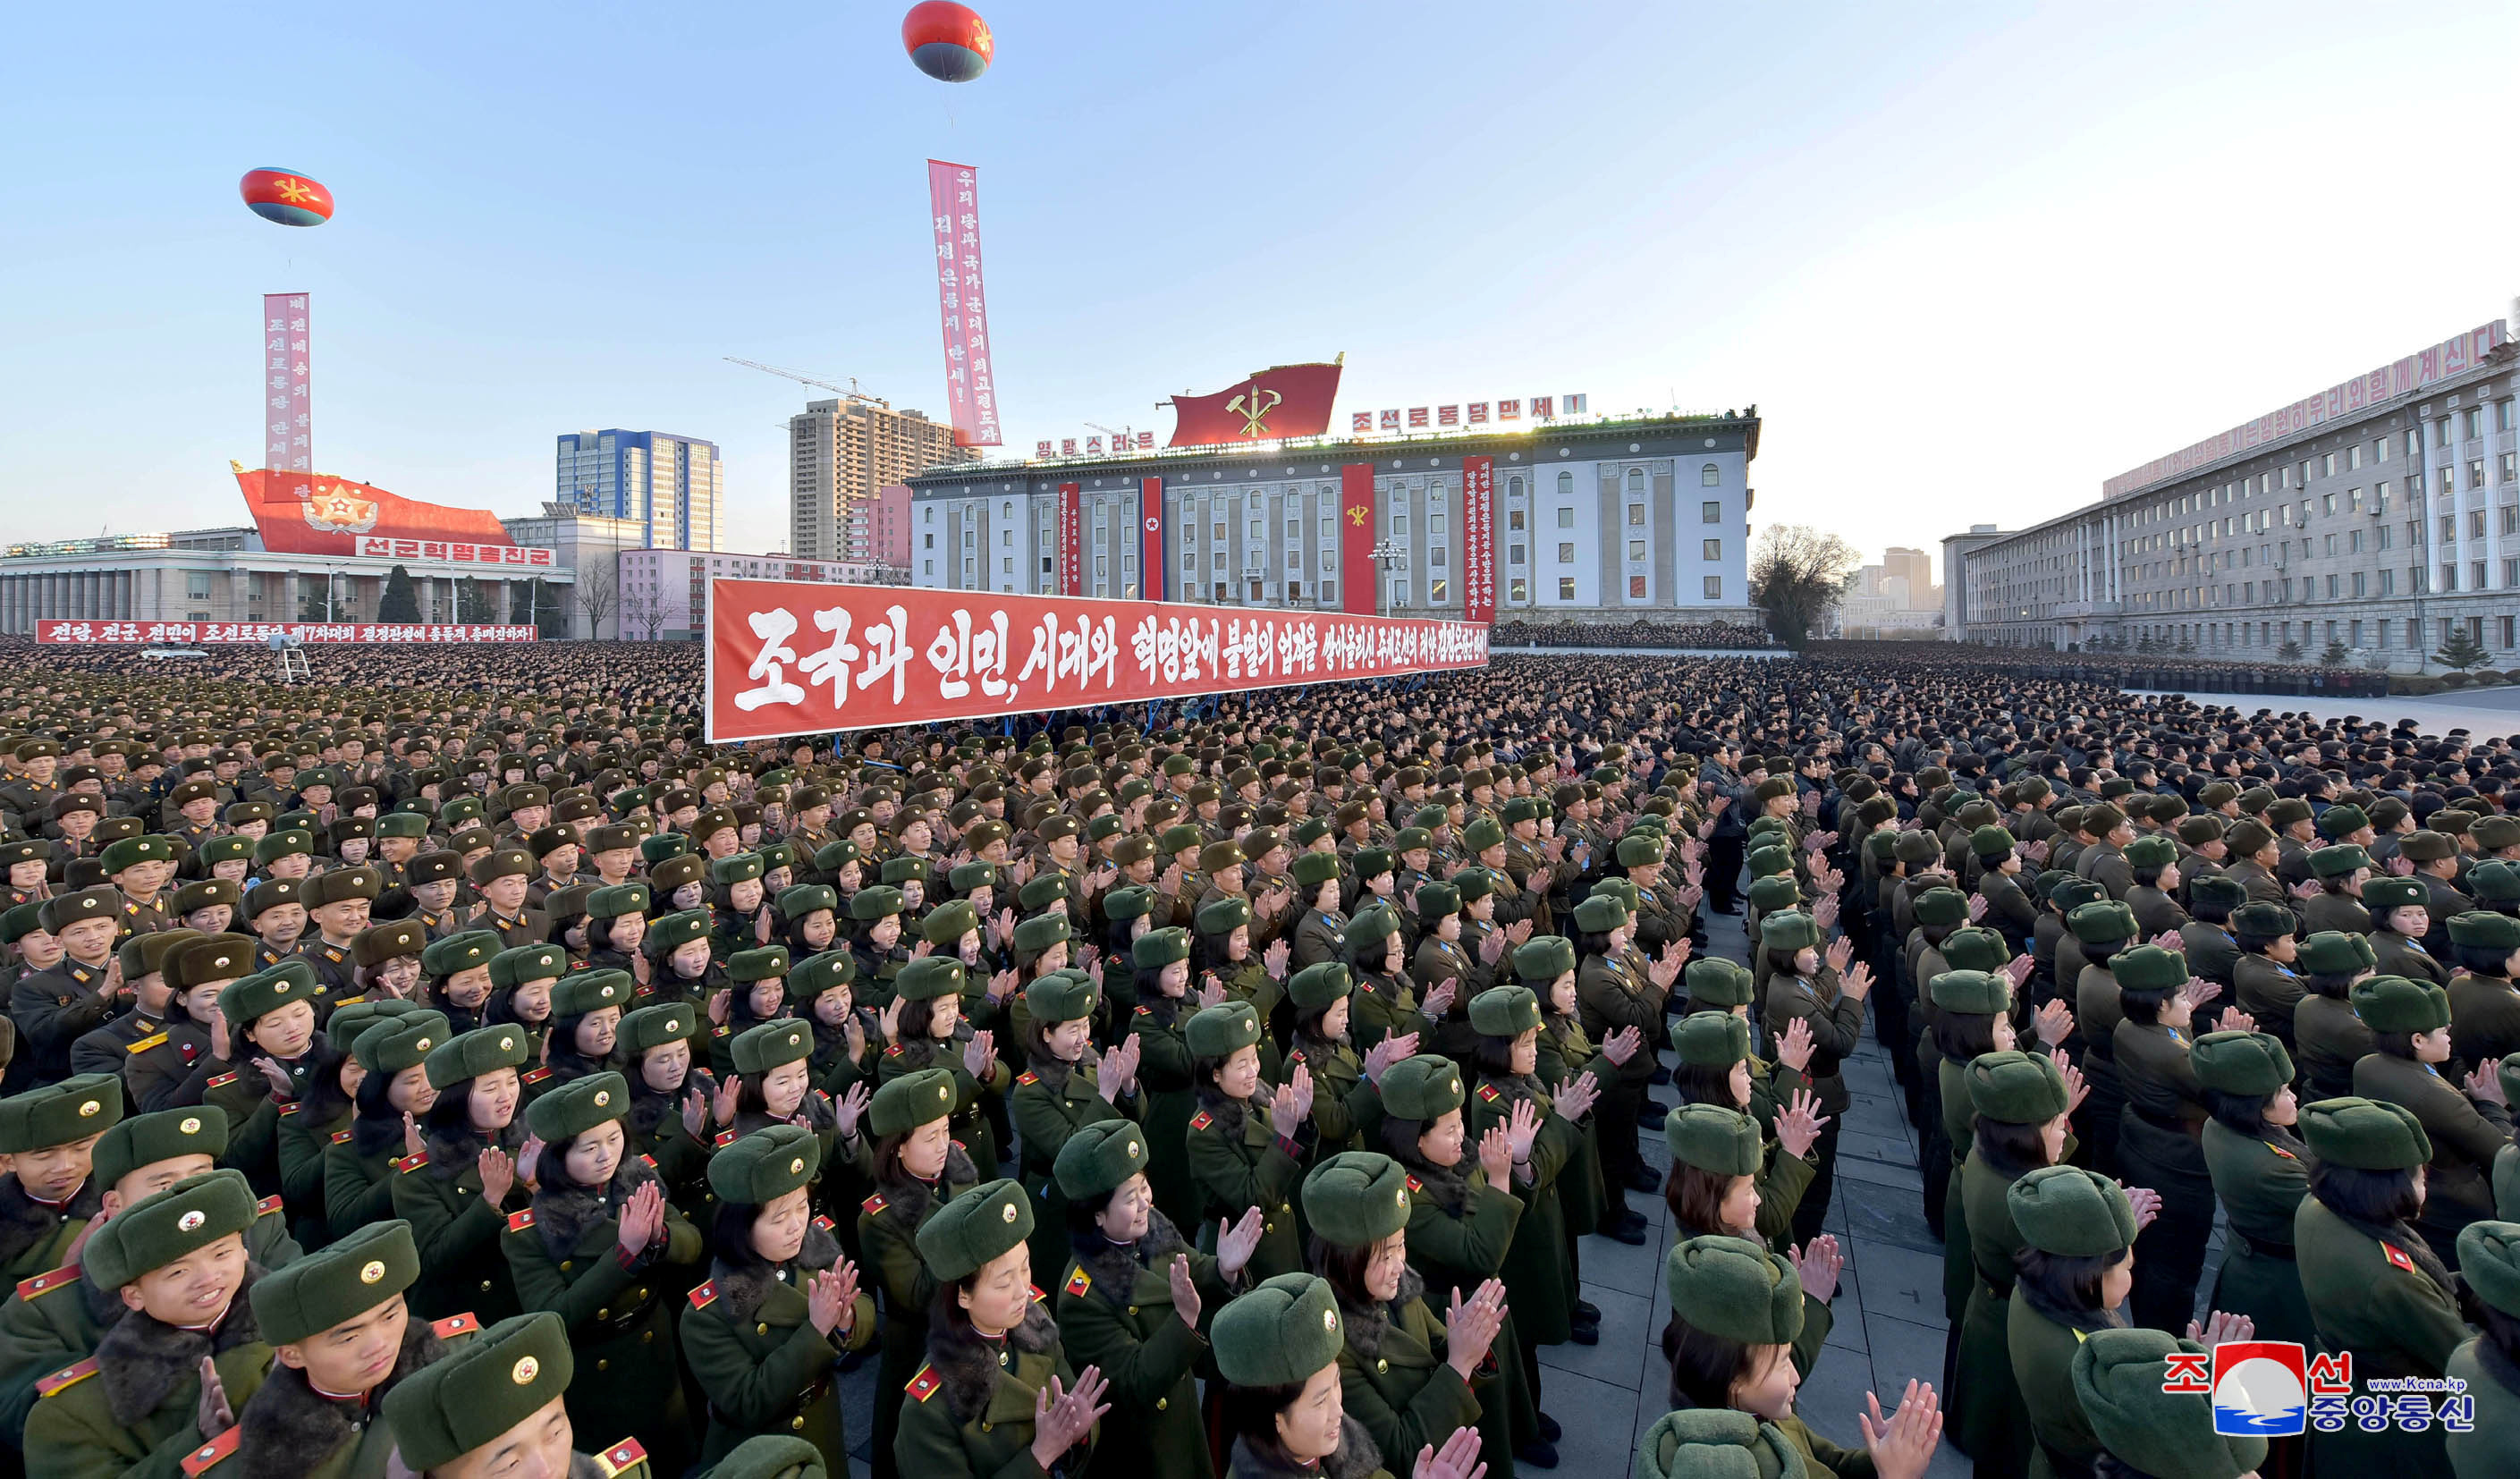 مئات العسكريين فى كوريا يحتفلون بالتجربة الأخيرة